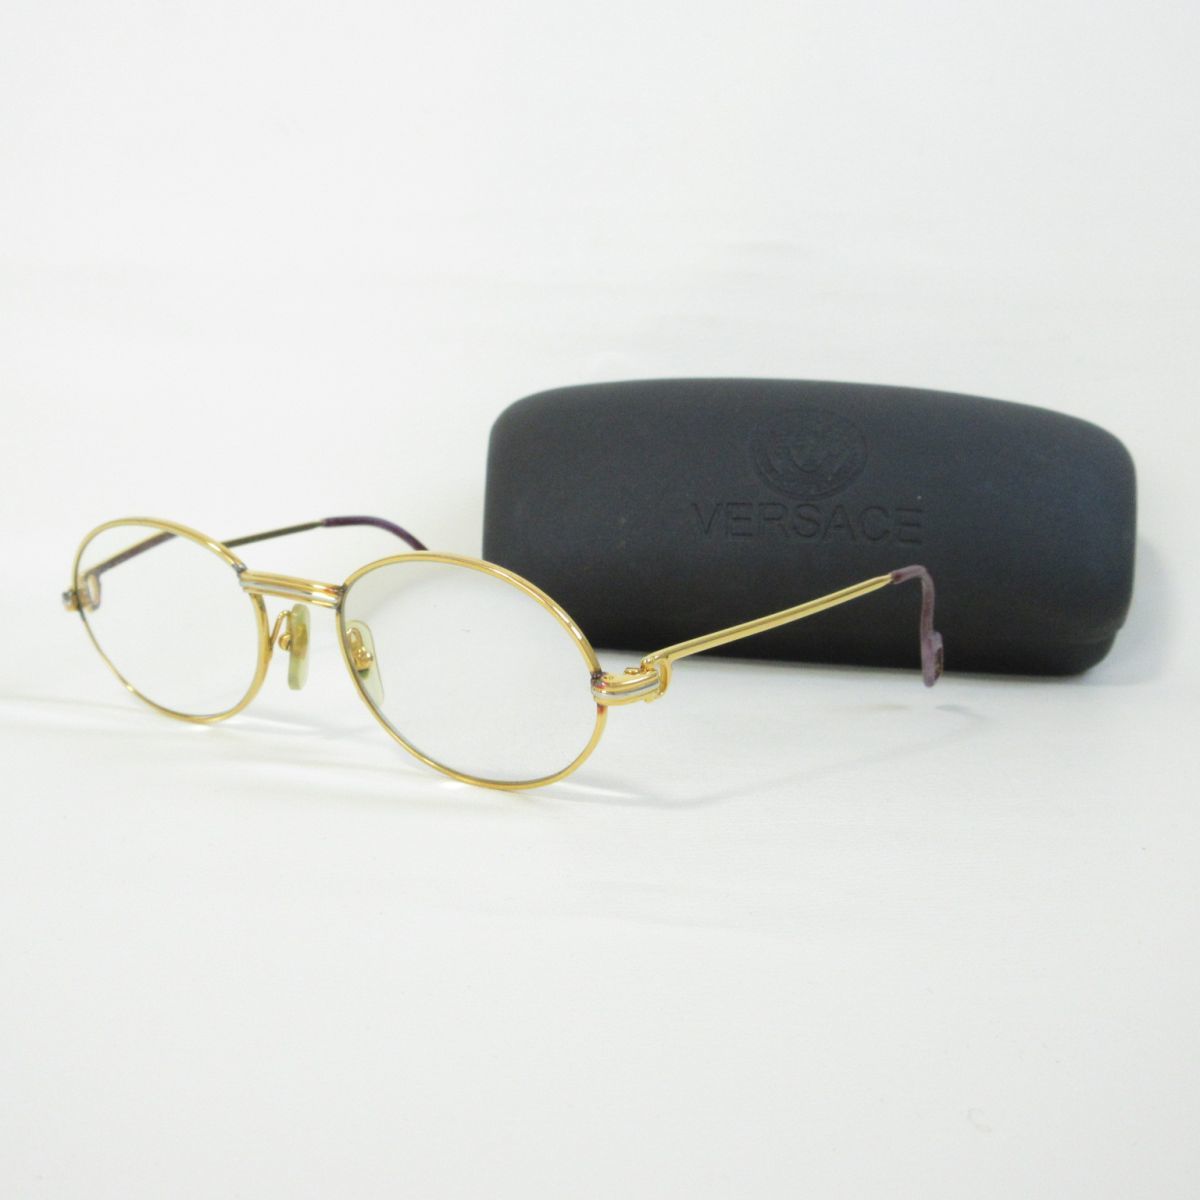 良品 Cartier カルティエ フランス製 度入り メガネ 眼鏡 アイウェア 金 ゴールド色 305